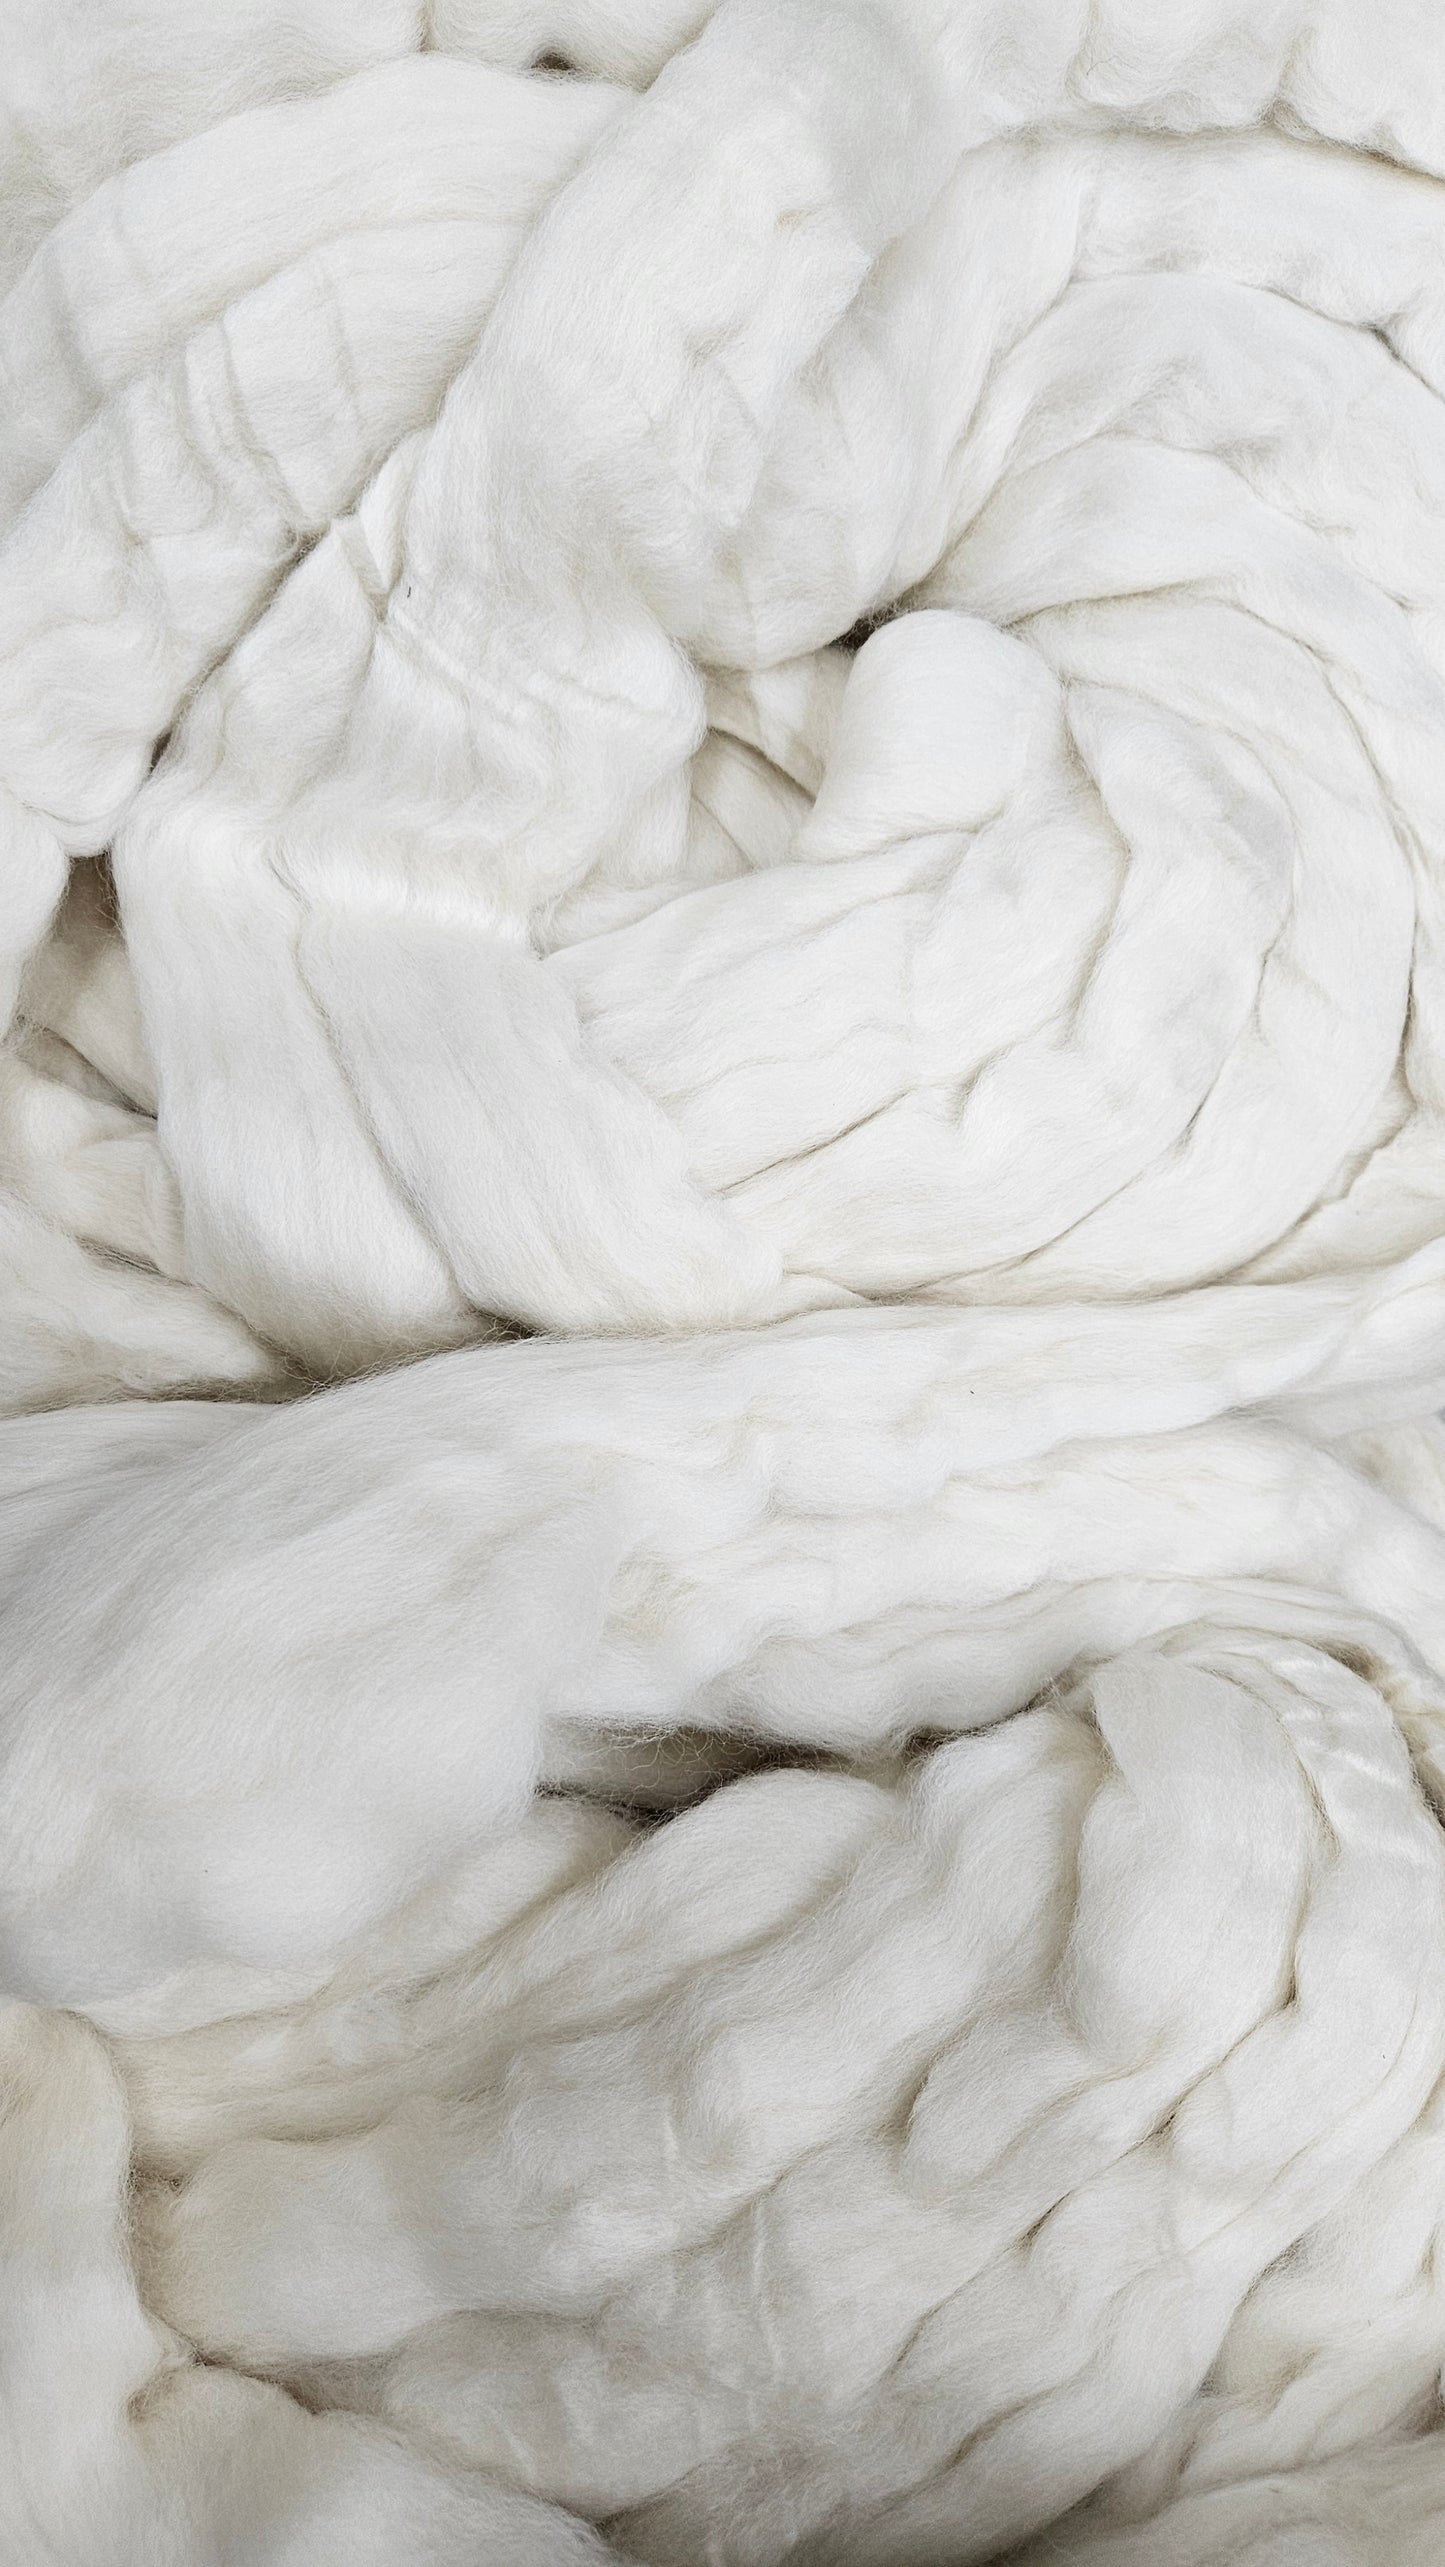 ORGANIC MERINO - Natural Wool Top Beginner Spinning Felting Carding Dyeing - 6 oz White